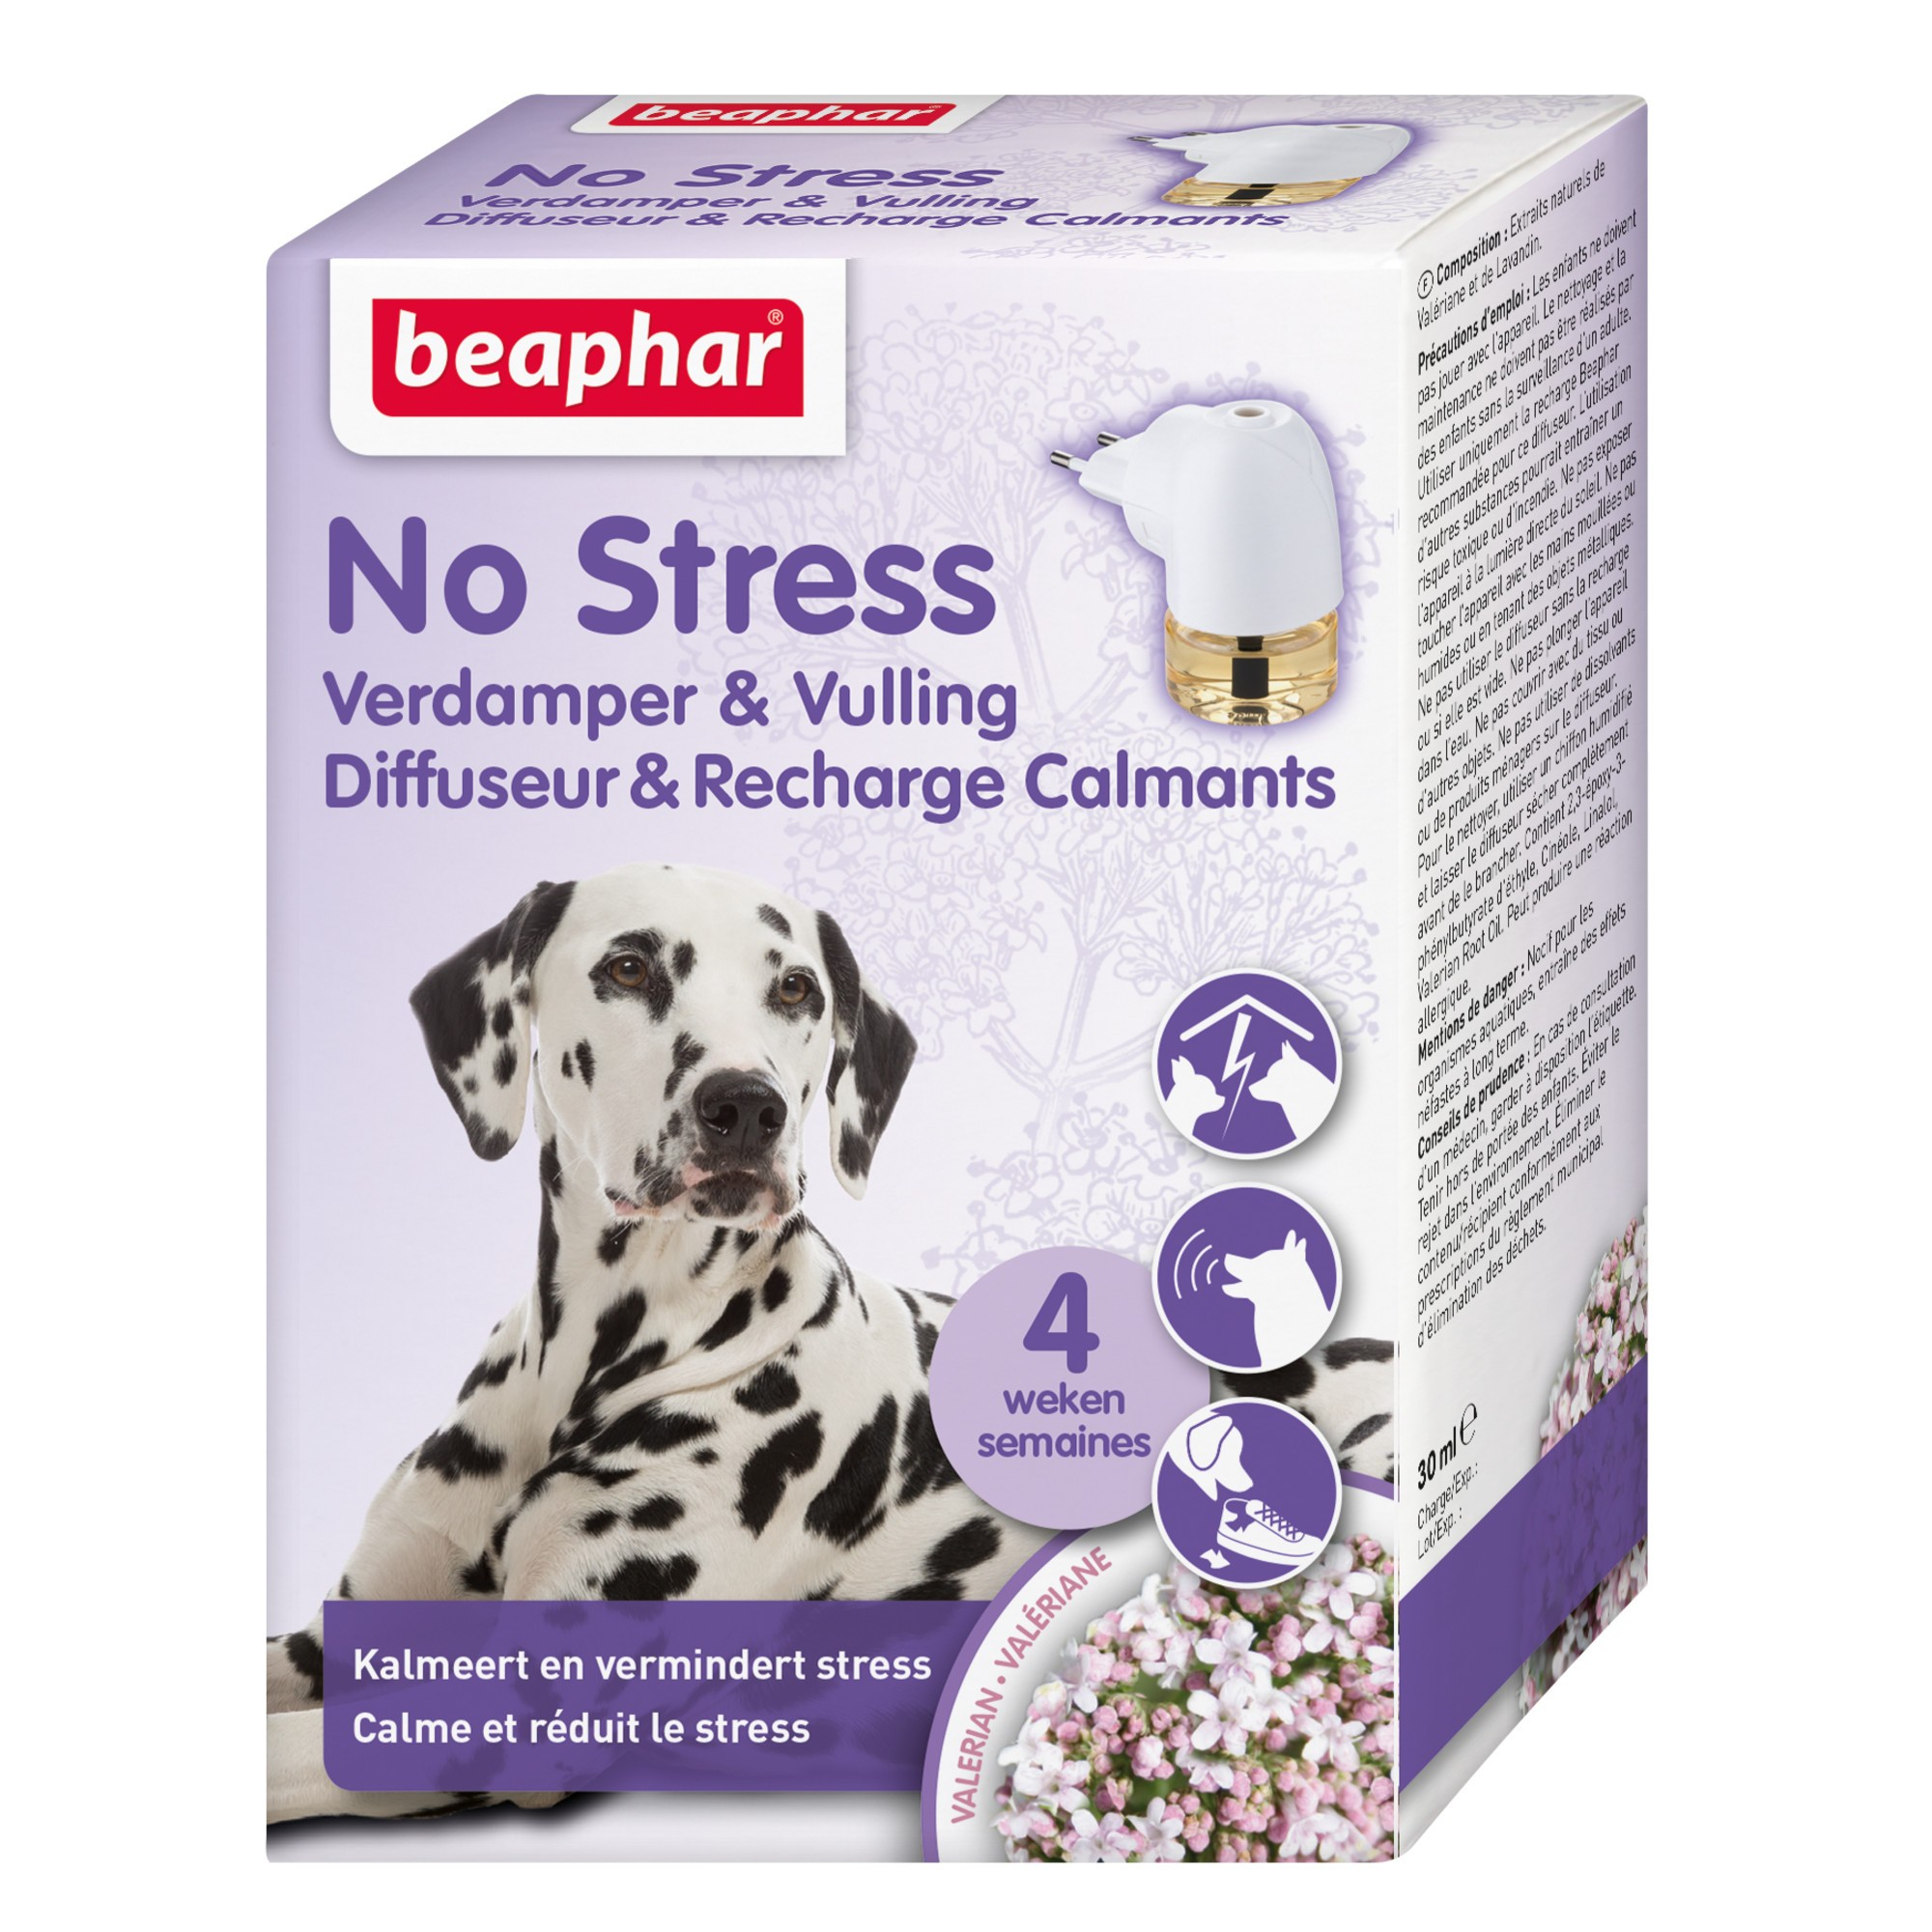 Beaphar No Stress Difusor relajante para perros